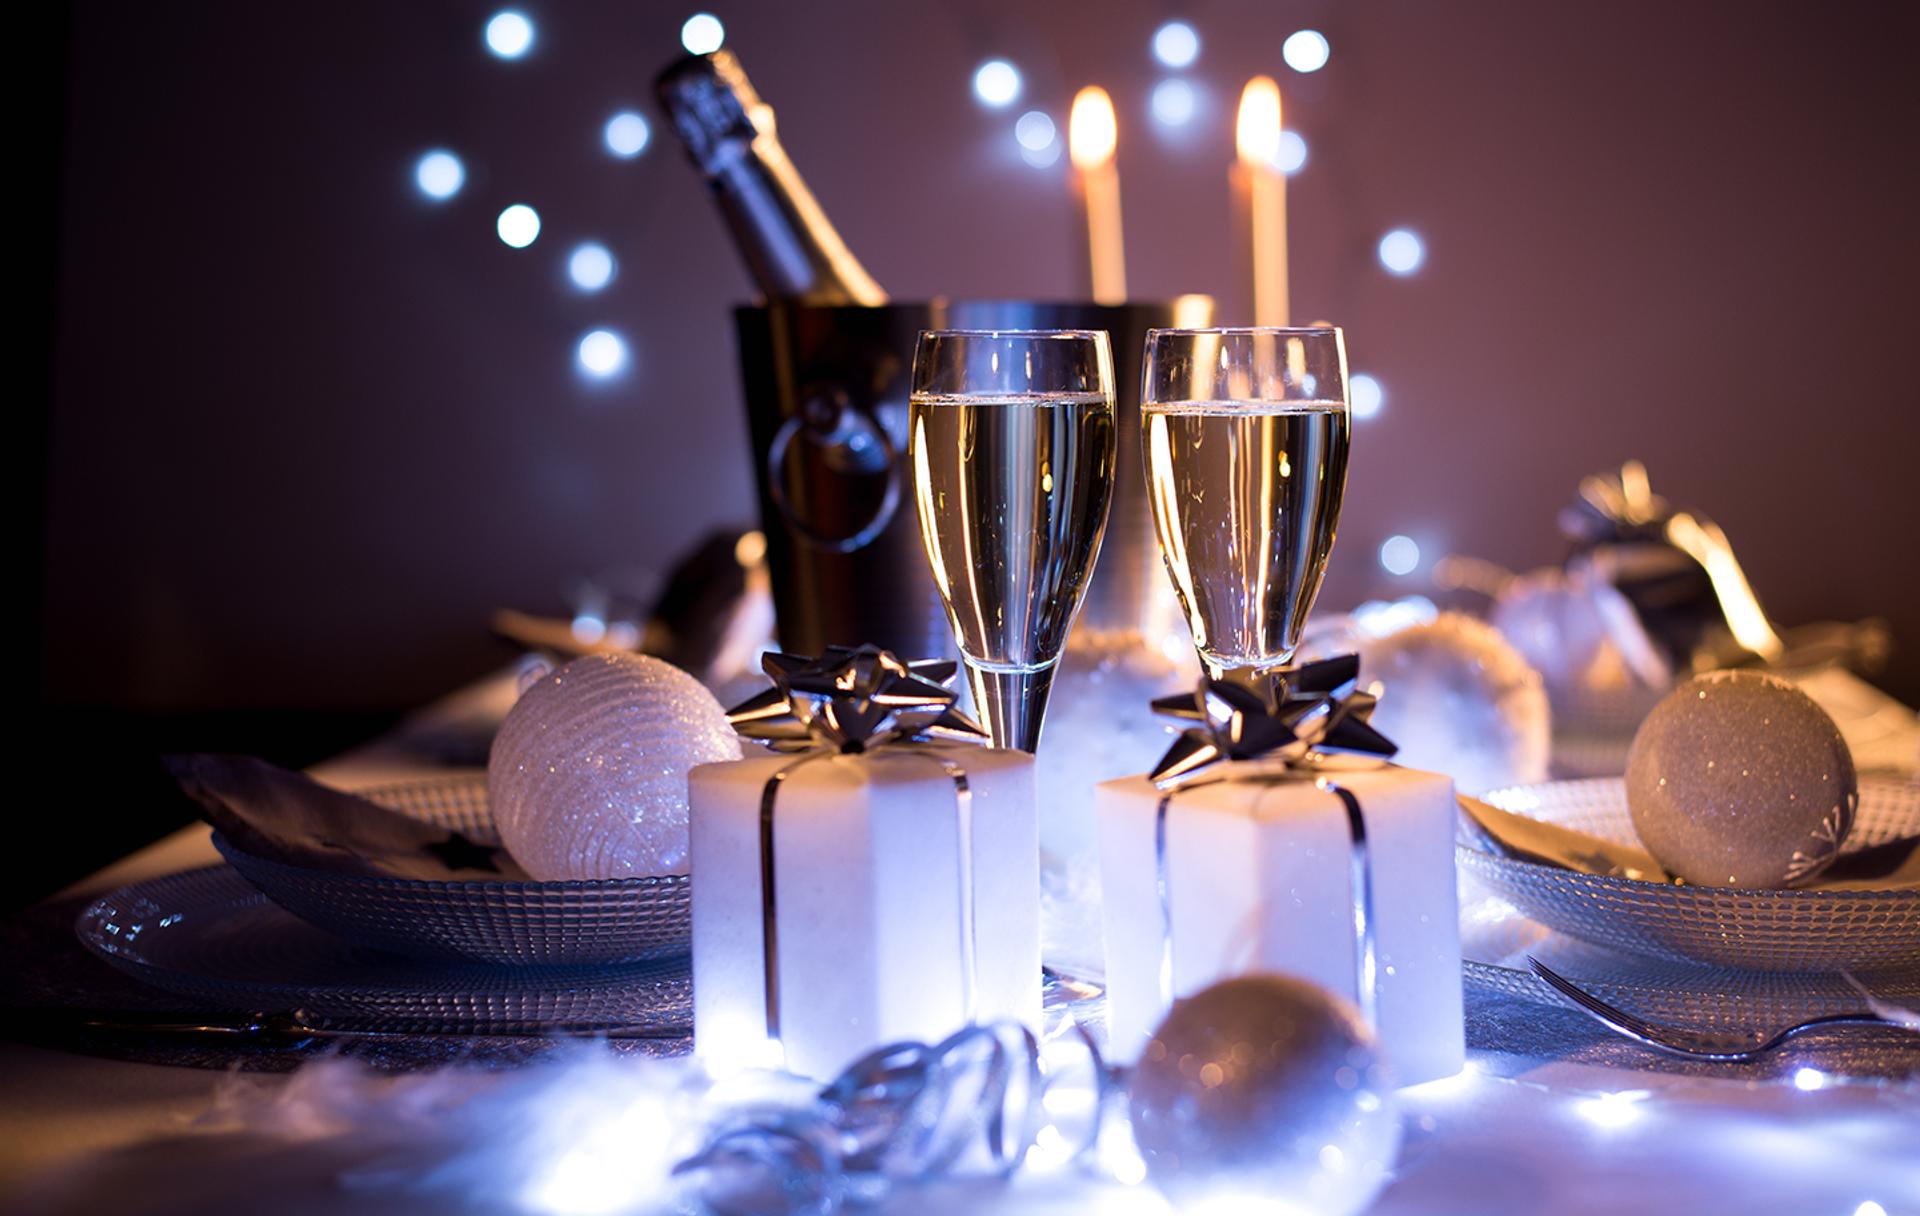 Fêtes de fin d'année : quels accords sur du Champagne ?